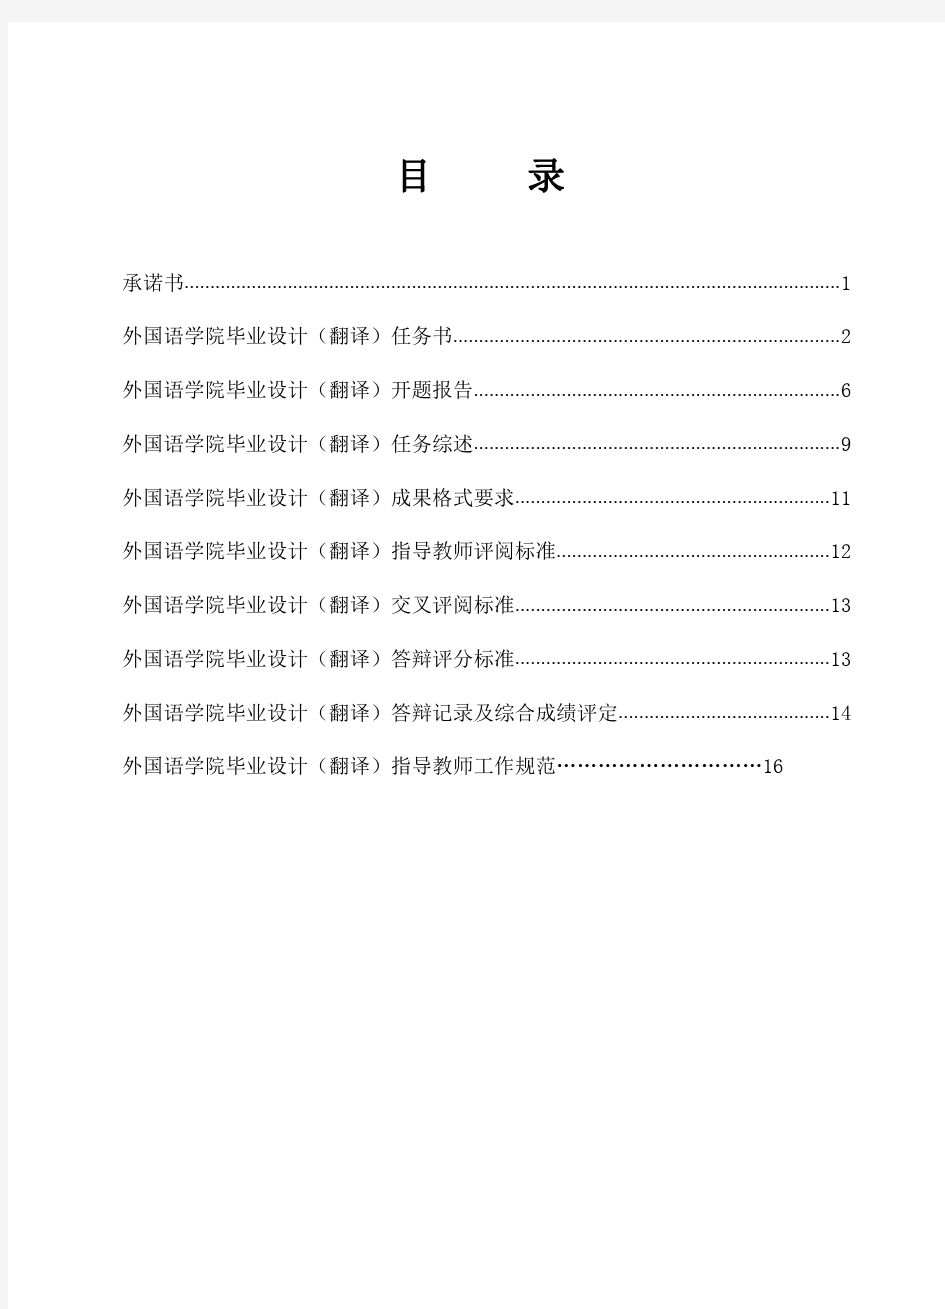 重庆交通大学毕业设计(翻译)工作手册